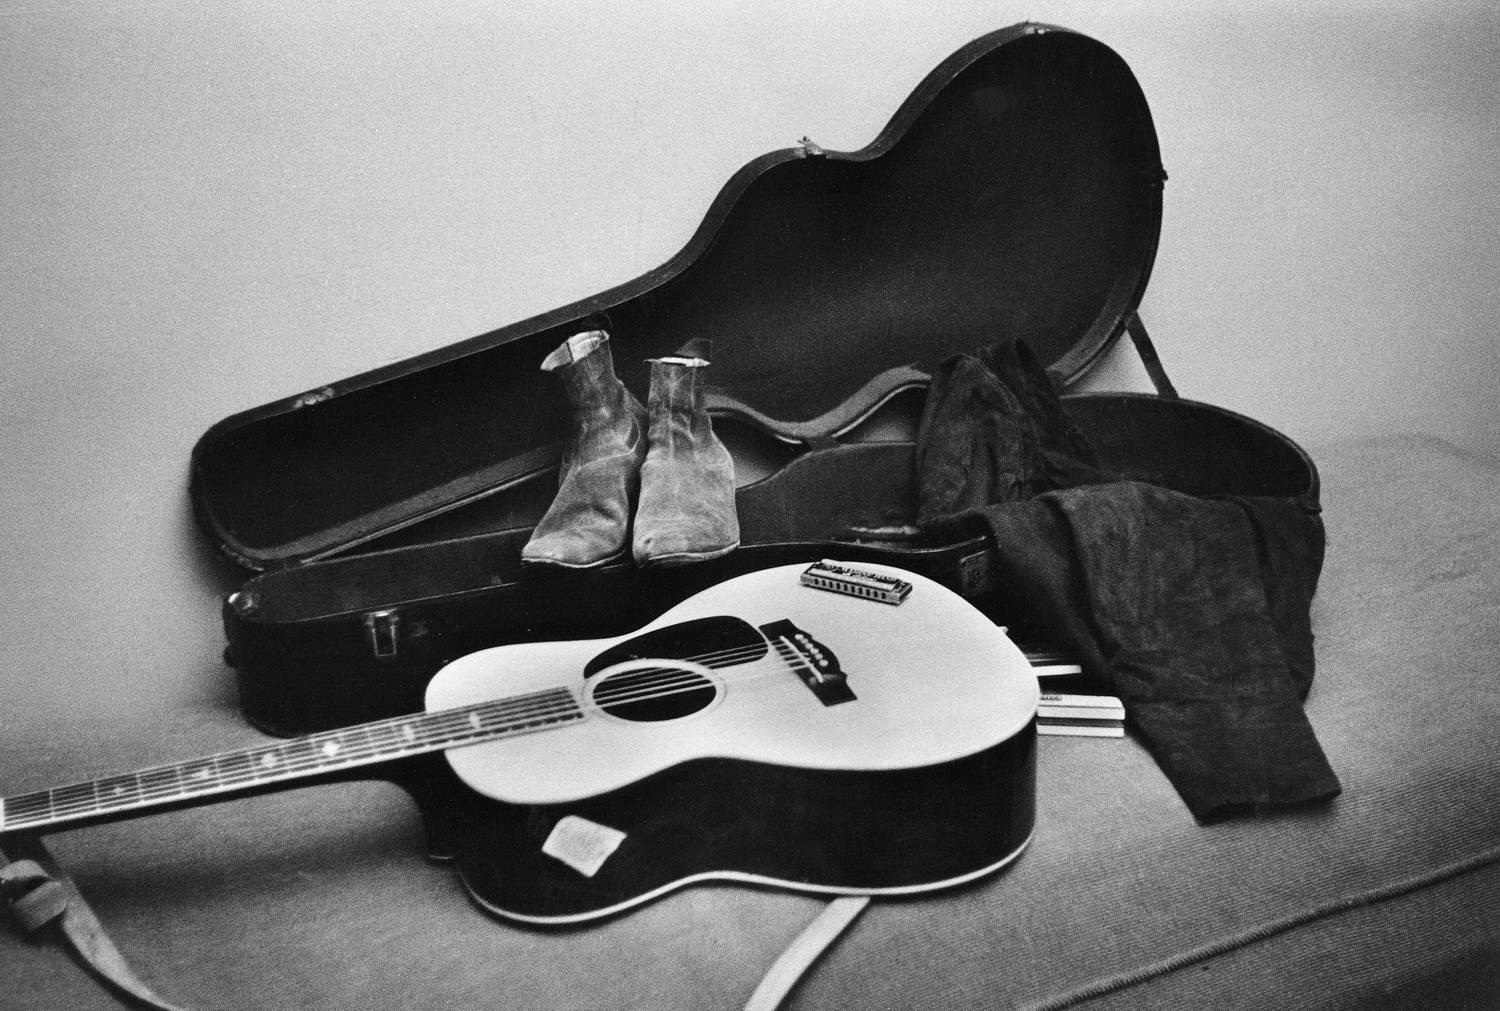 Daniel Kramer Black and White Photograph - Bob Dylan's Stuff in Dressing Room, Buffalo, New York